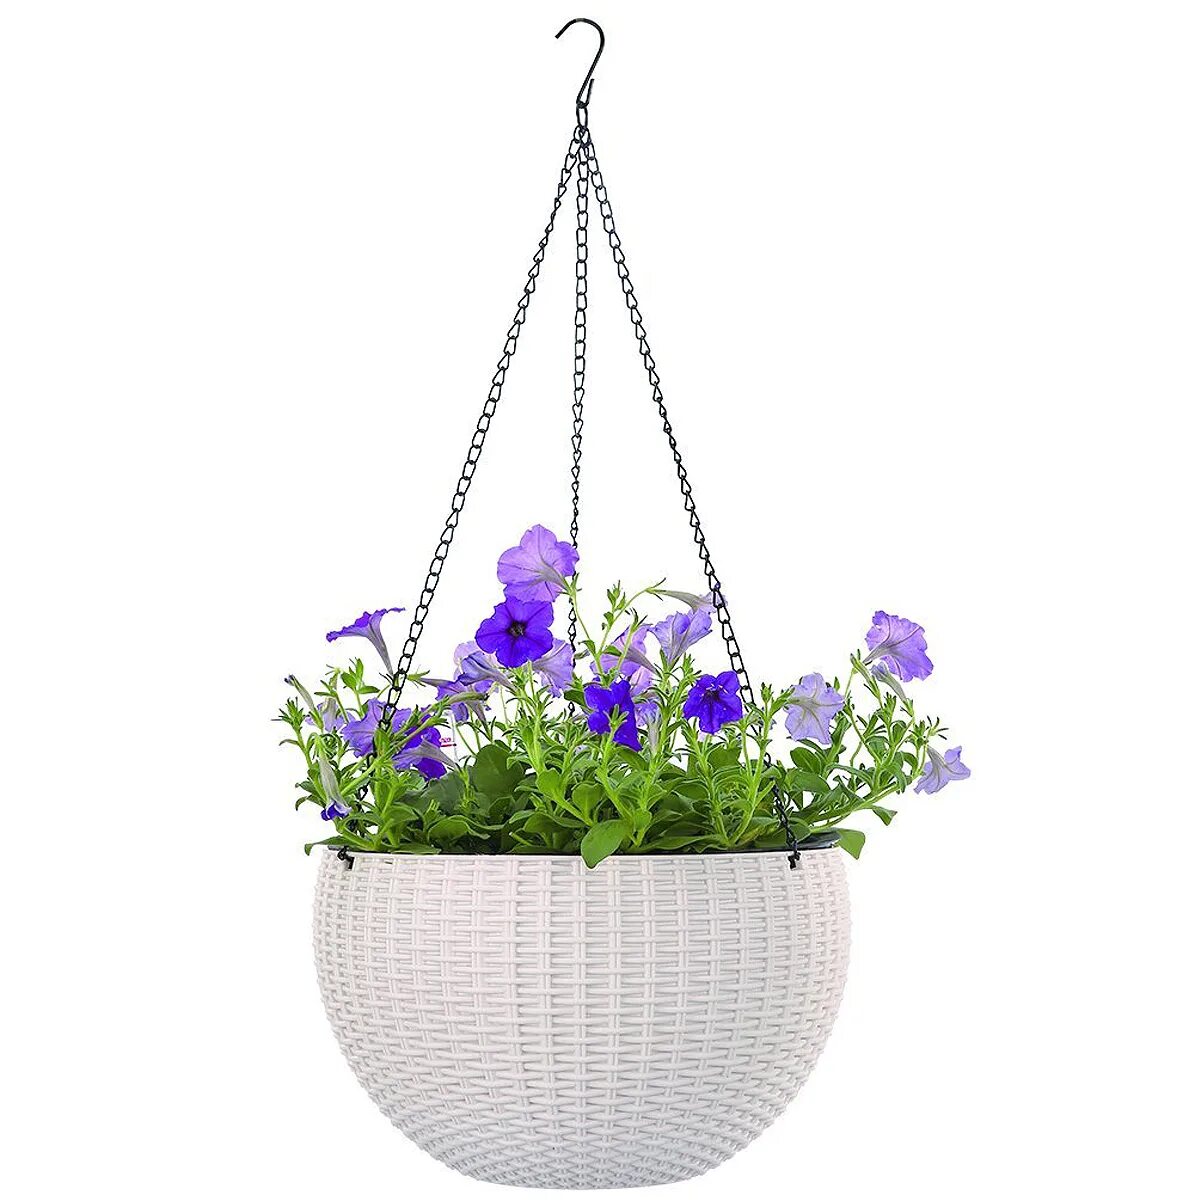 Купить подвесные горшки. Подвесное кашпо Hanging Sphere Planter. Кашпо Keter Rattan Style Hanging подвесное. Цветы в подвесных горшках. Висячий цветок в горшке.